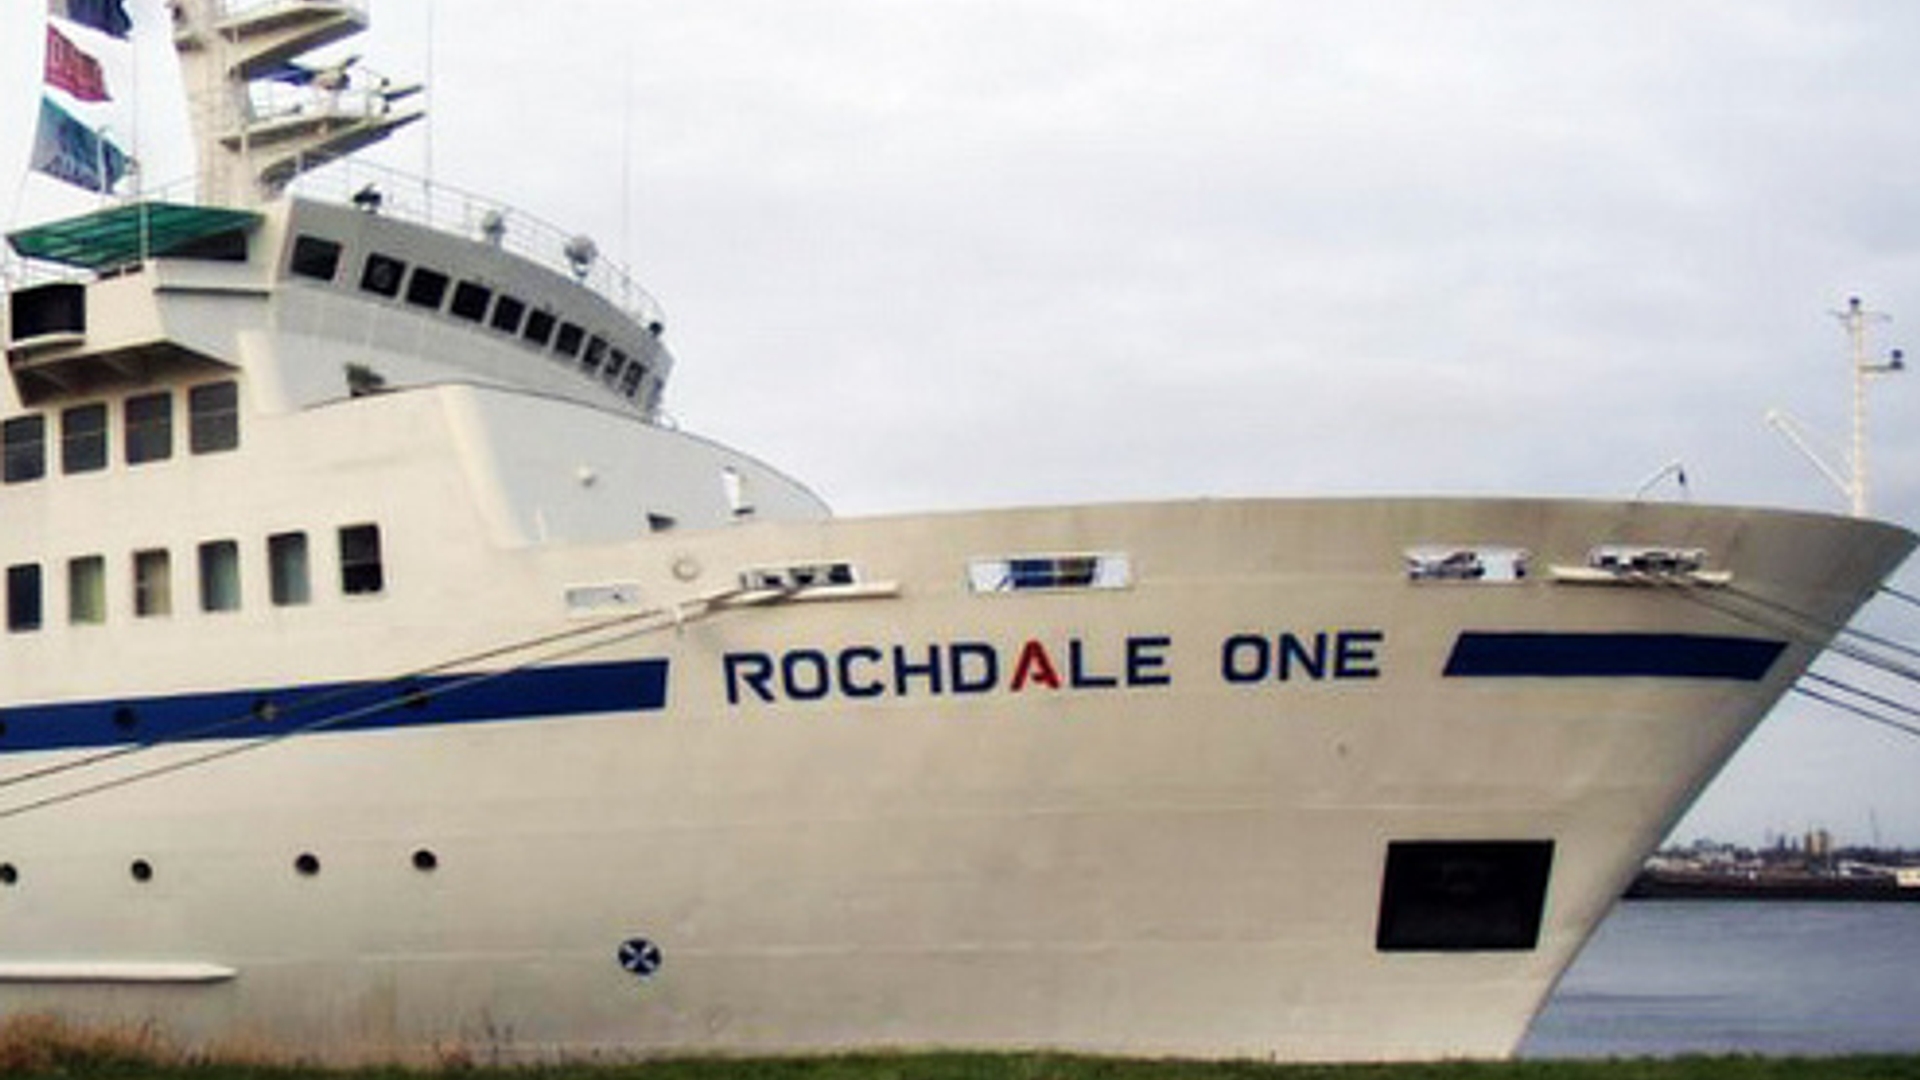 rochdale-one-boat-300px.jpg